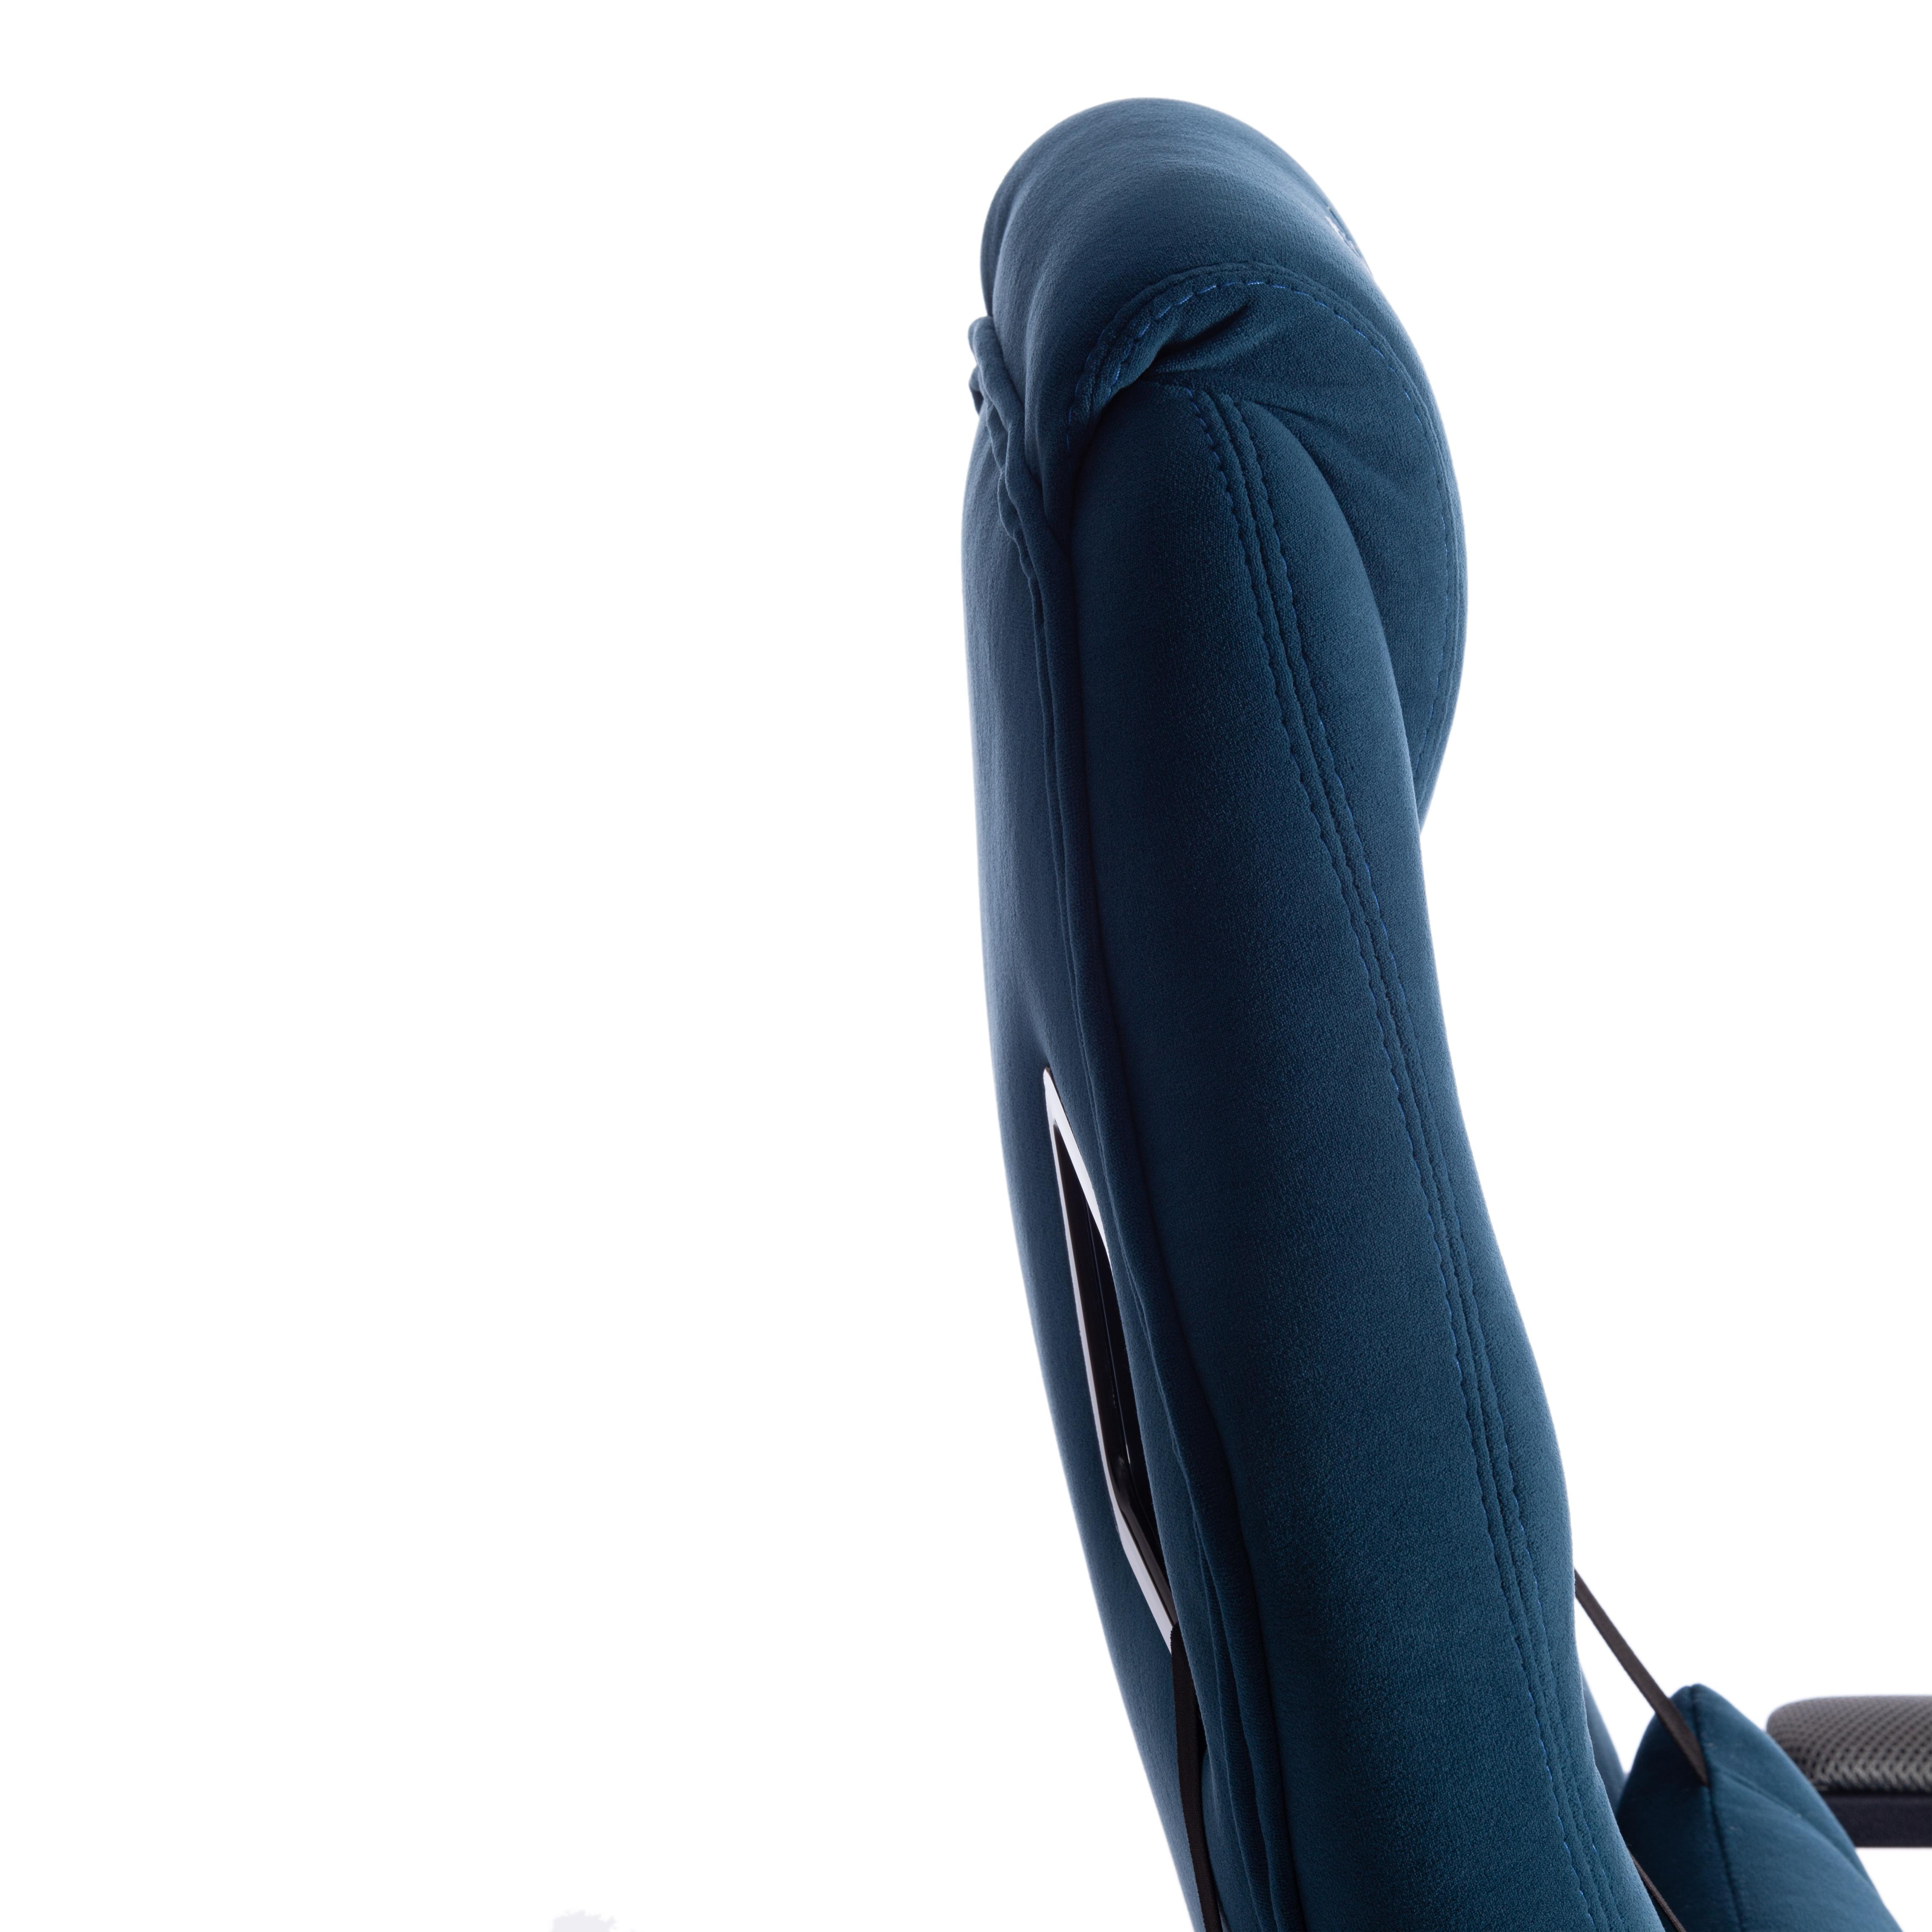 Кресло DRIVER (22) флок/ткань, синий/серый, 32/TW-12